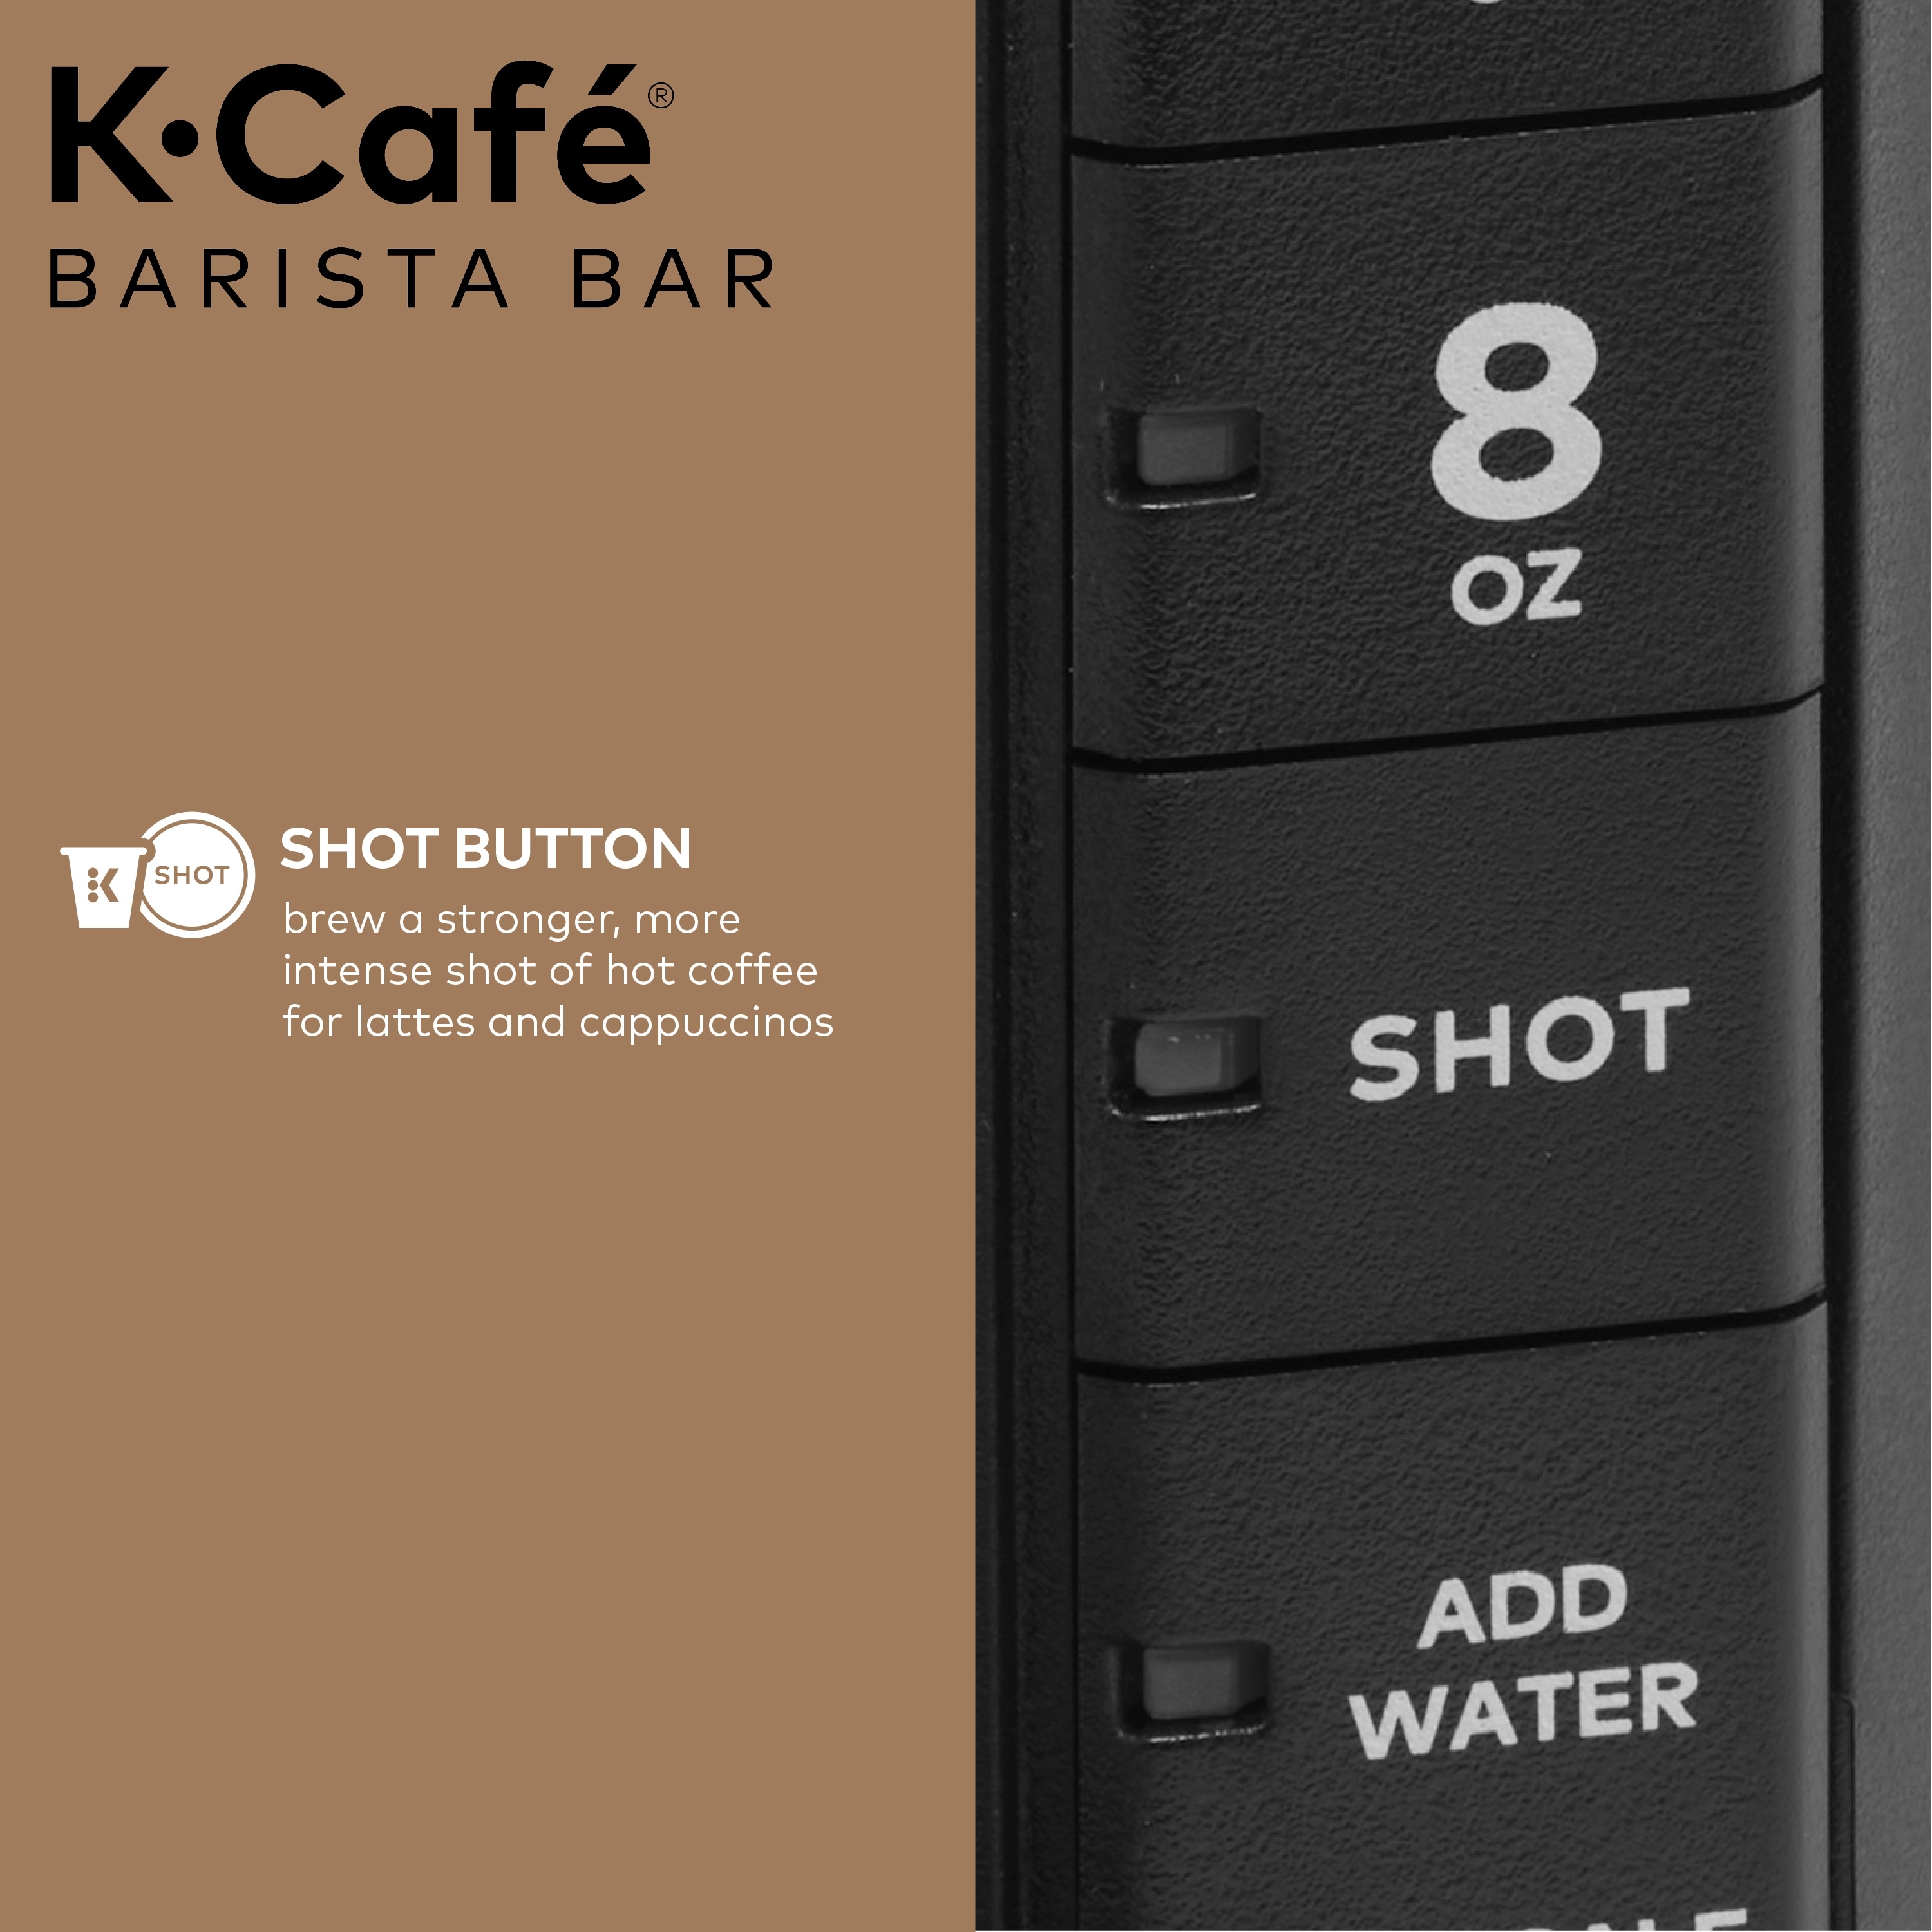 Keurig® K-Café Barista Bar Brewer and Frother